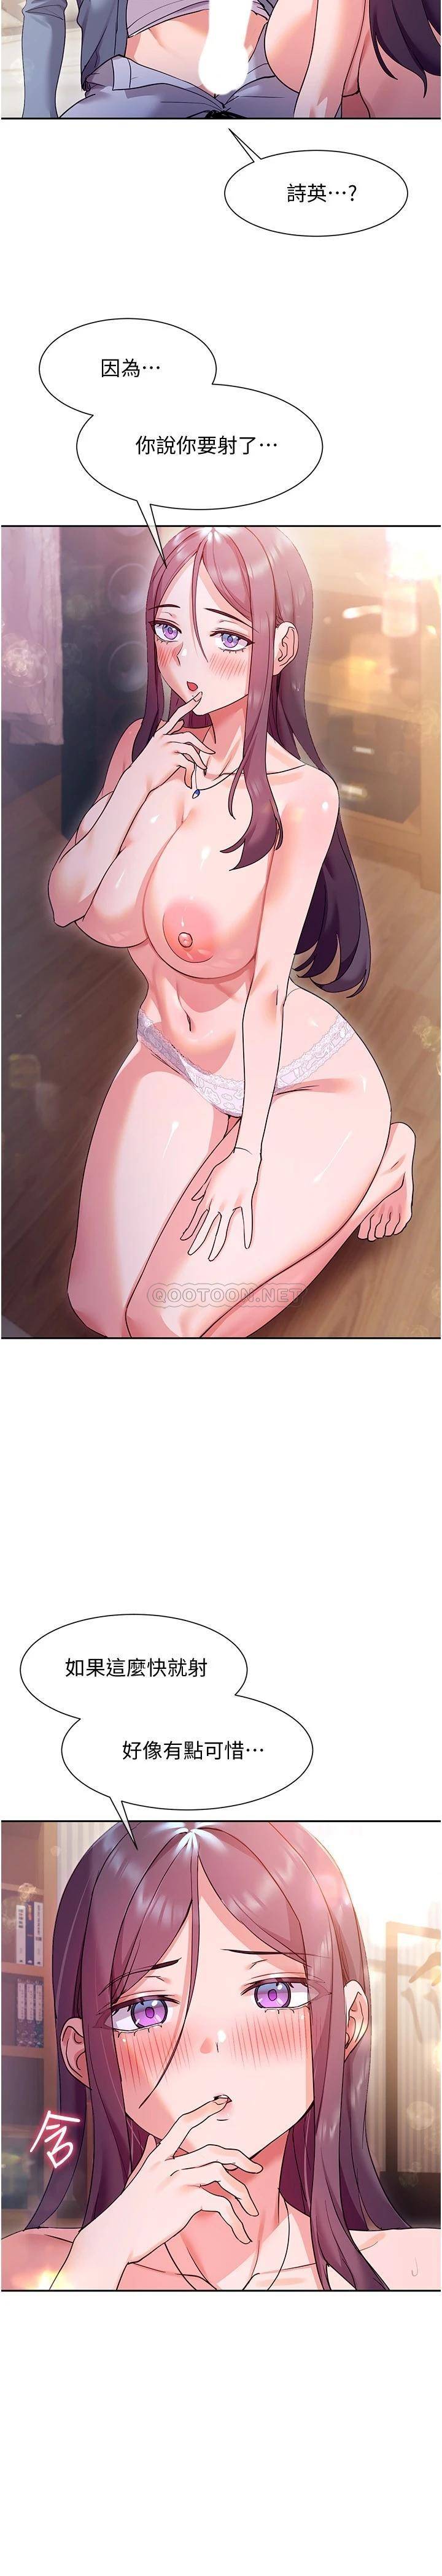 韩国污漫画 現上教學 第12话让你体验乳交的快感! 29